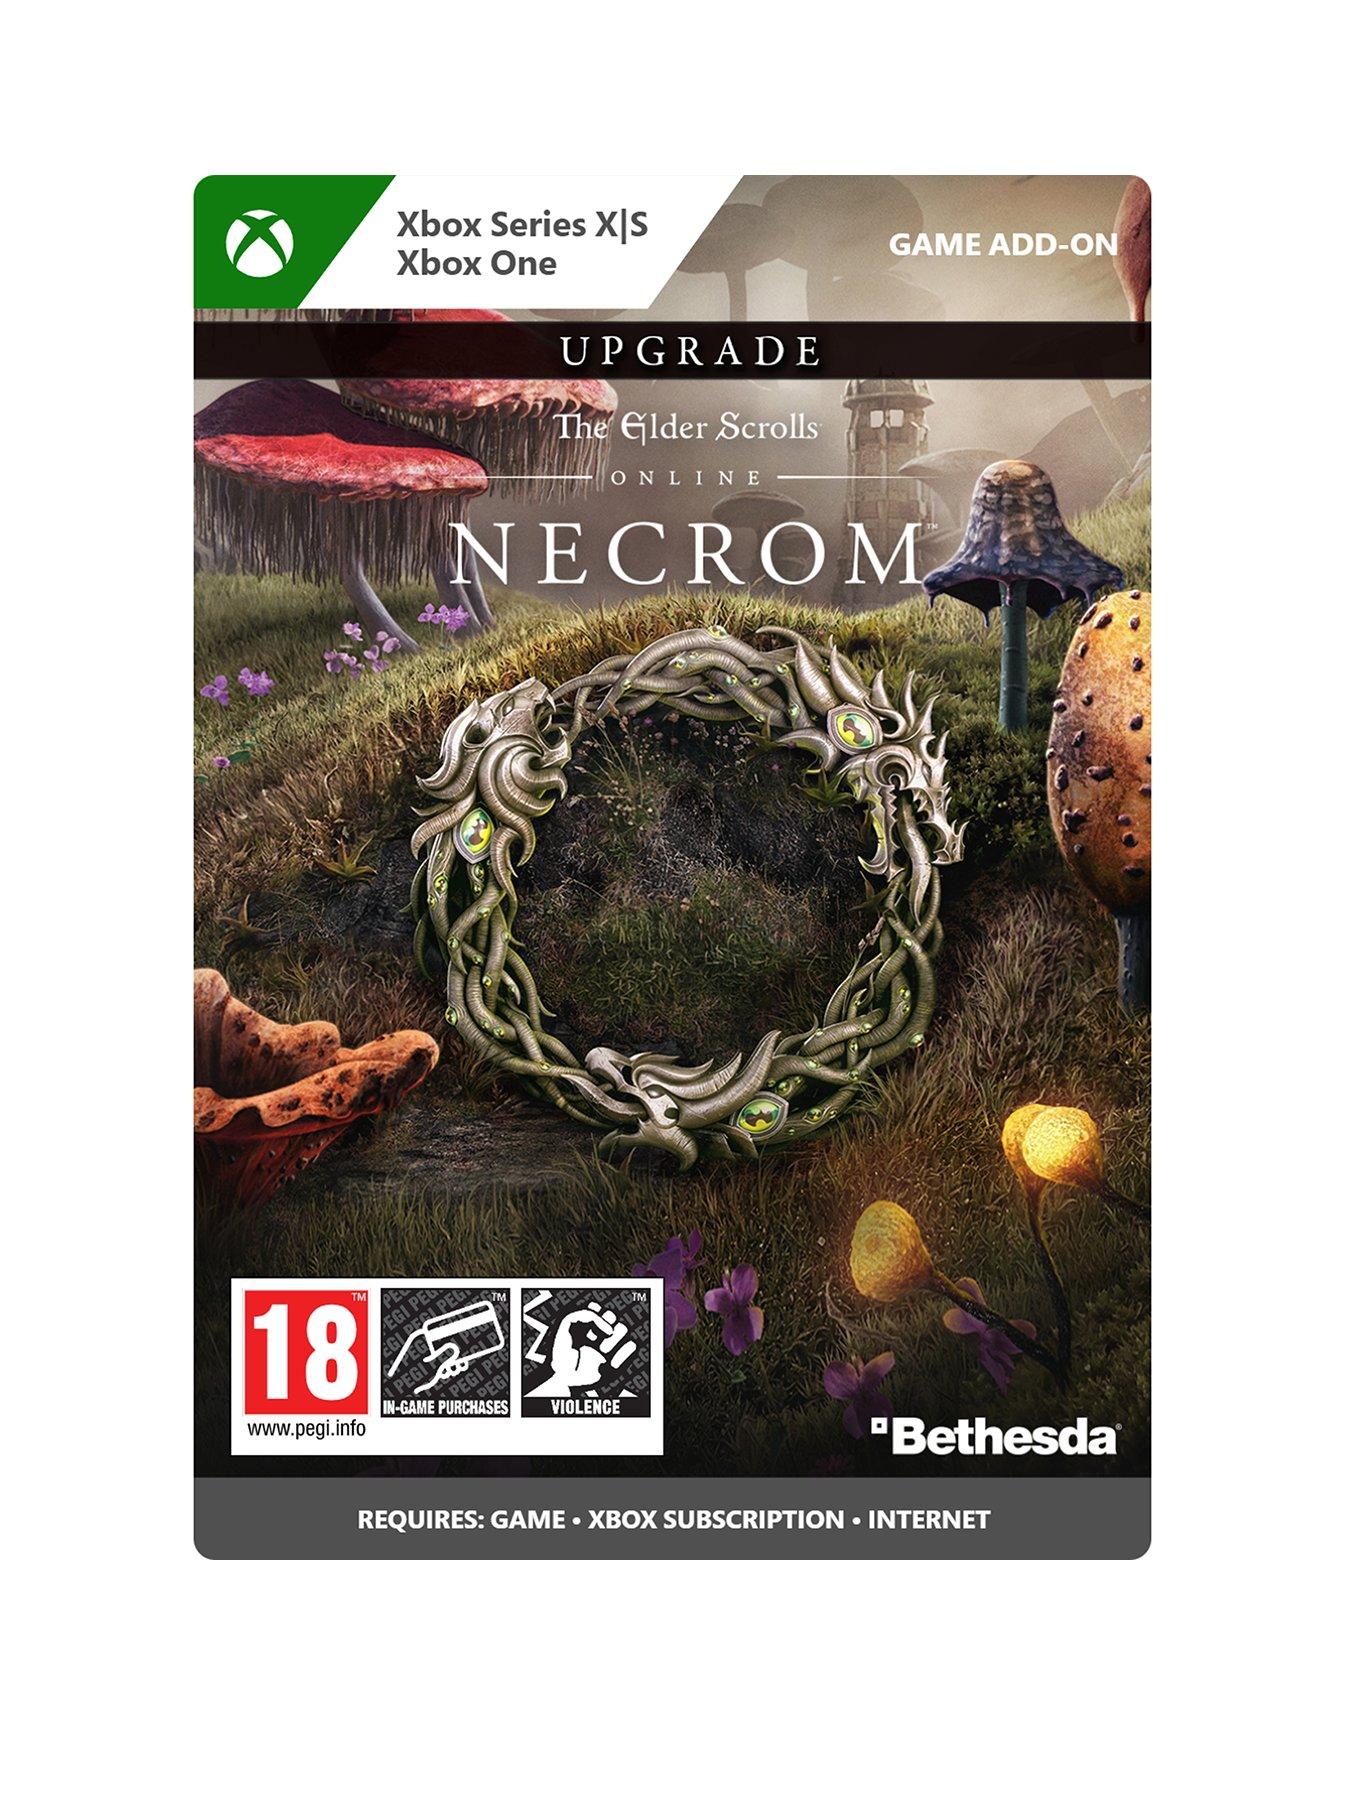 Elder Scrolls Online: Necrom chega em junho